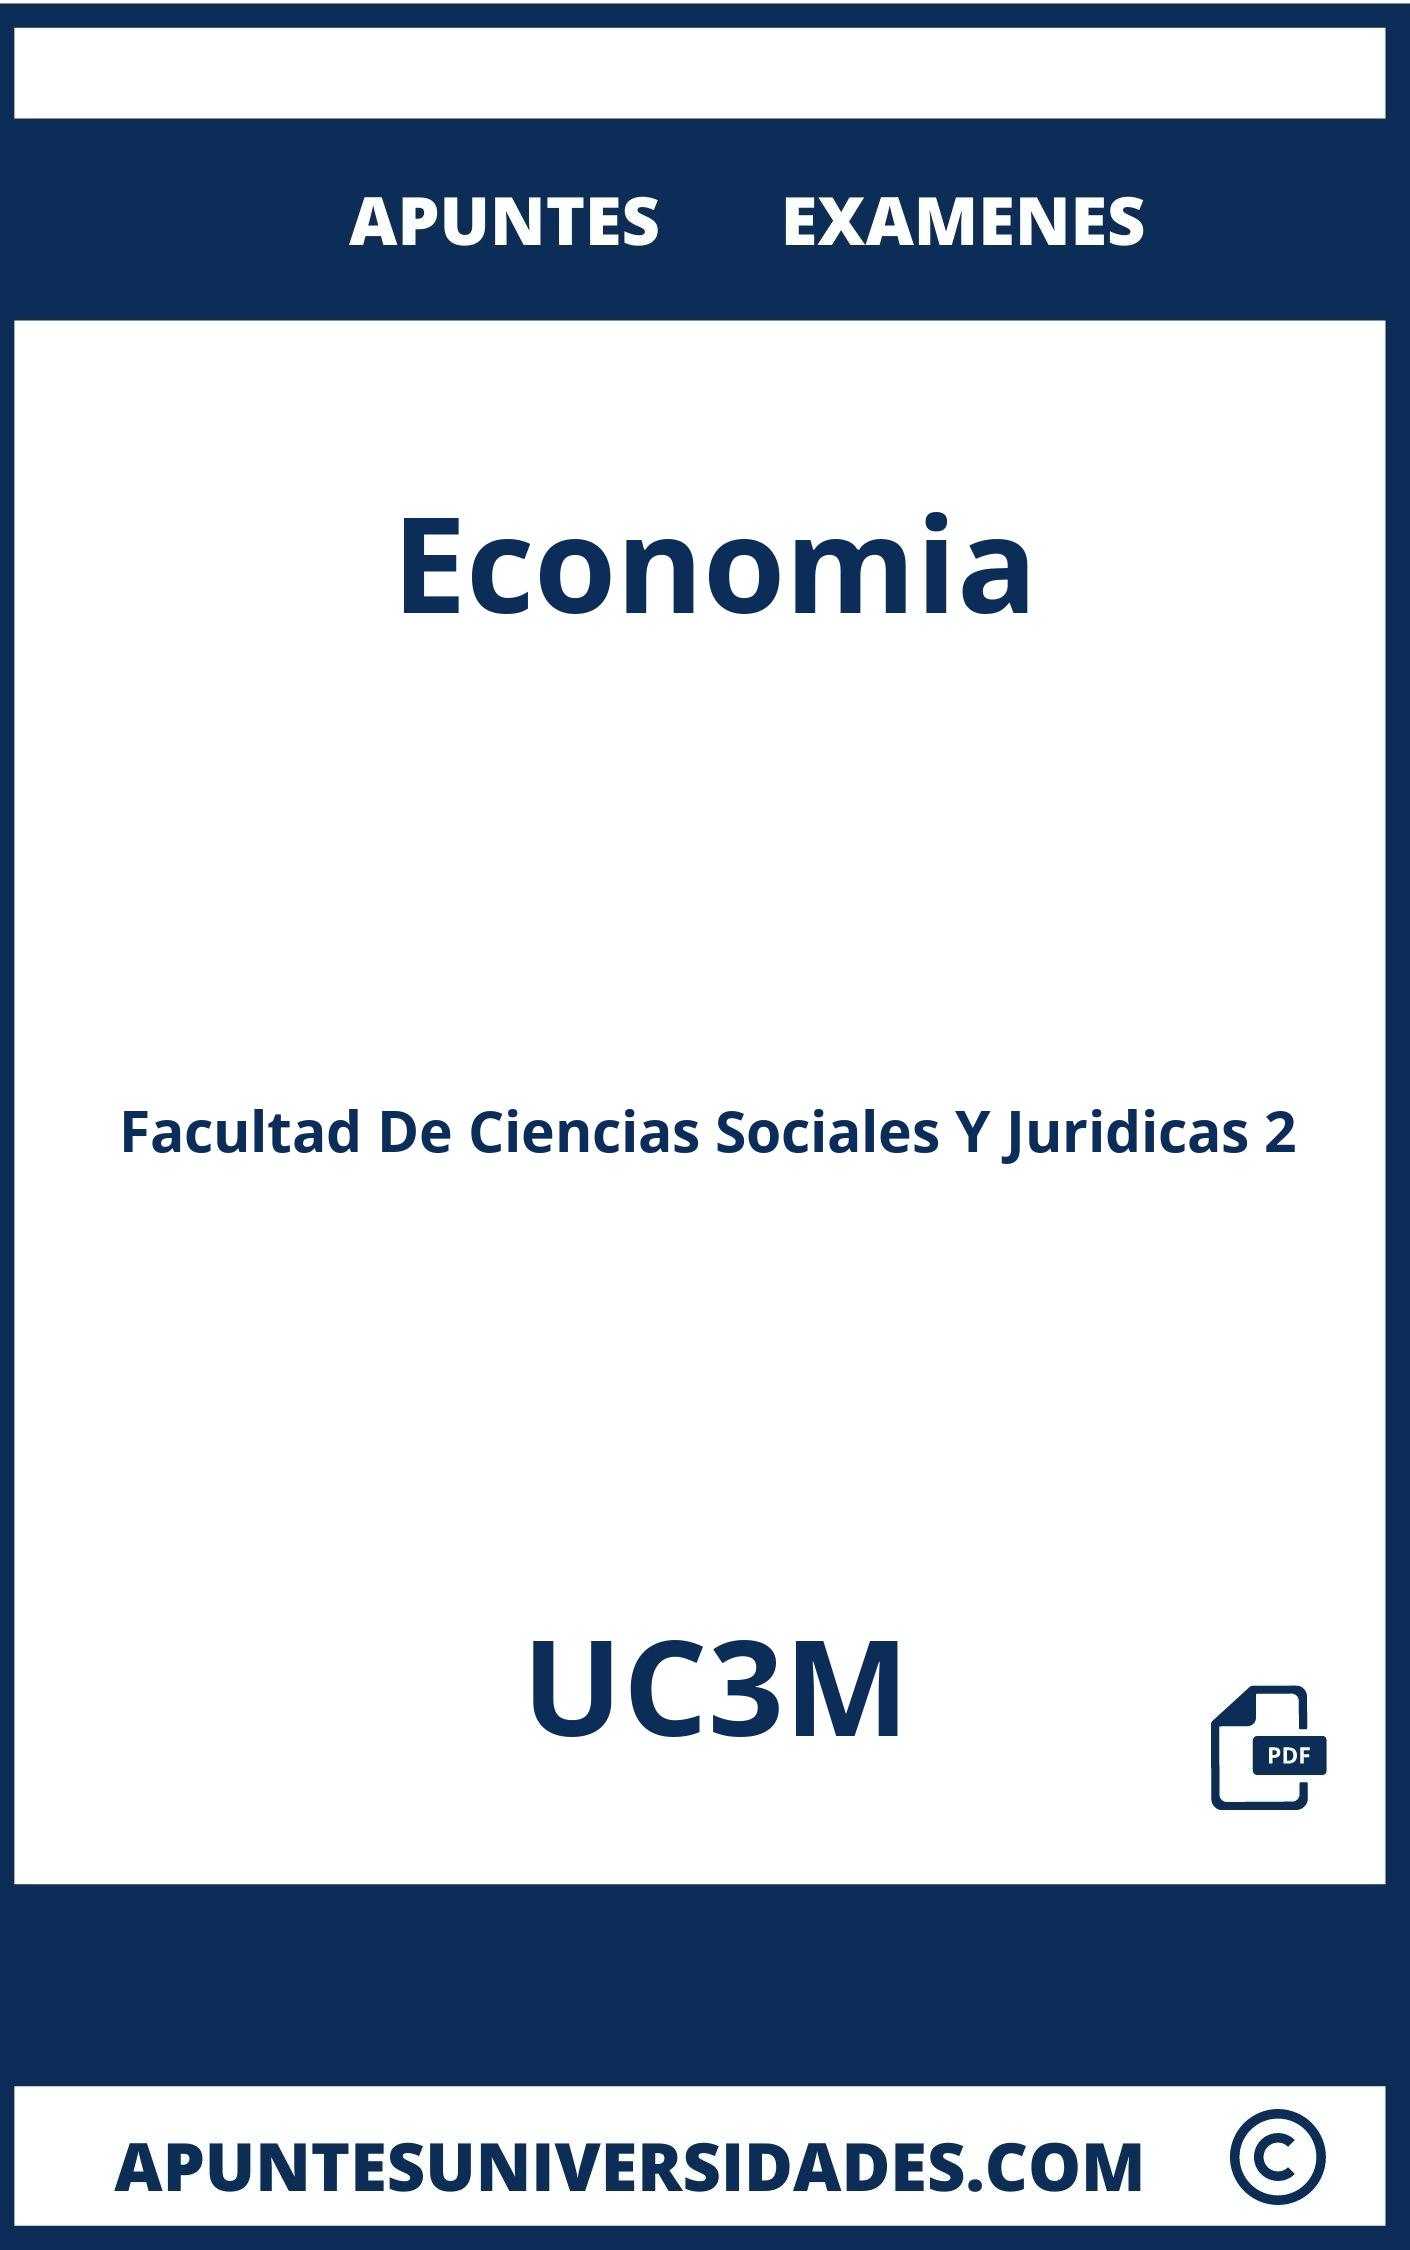 Apuntes y Examenes Economia UC3M